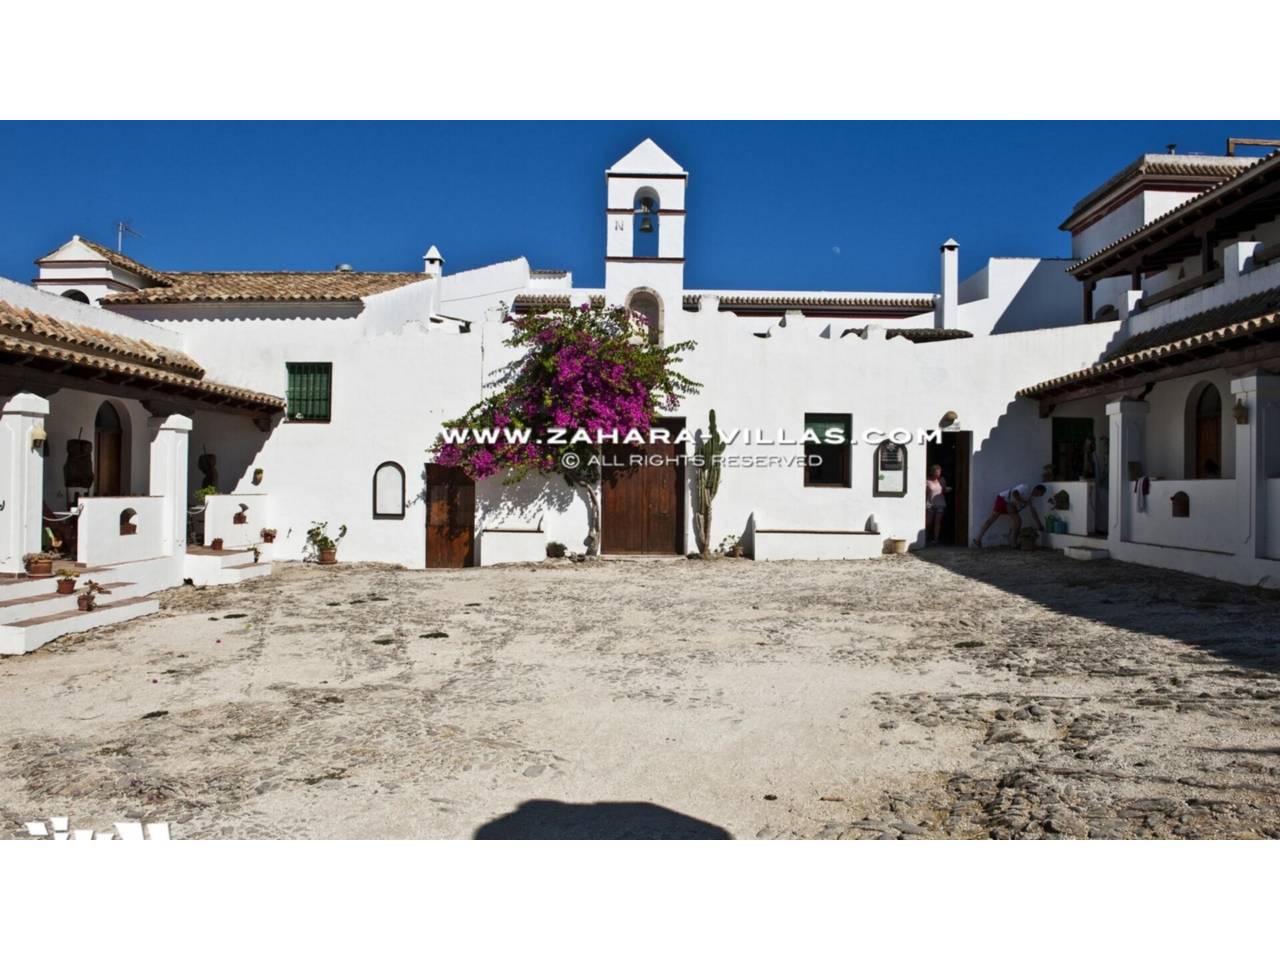 Imagen 3 de Rural Hotel en San Ambrosio, Barbate